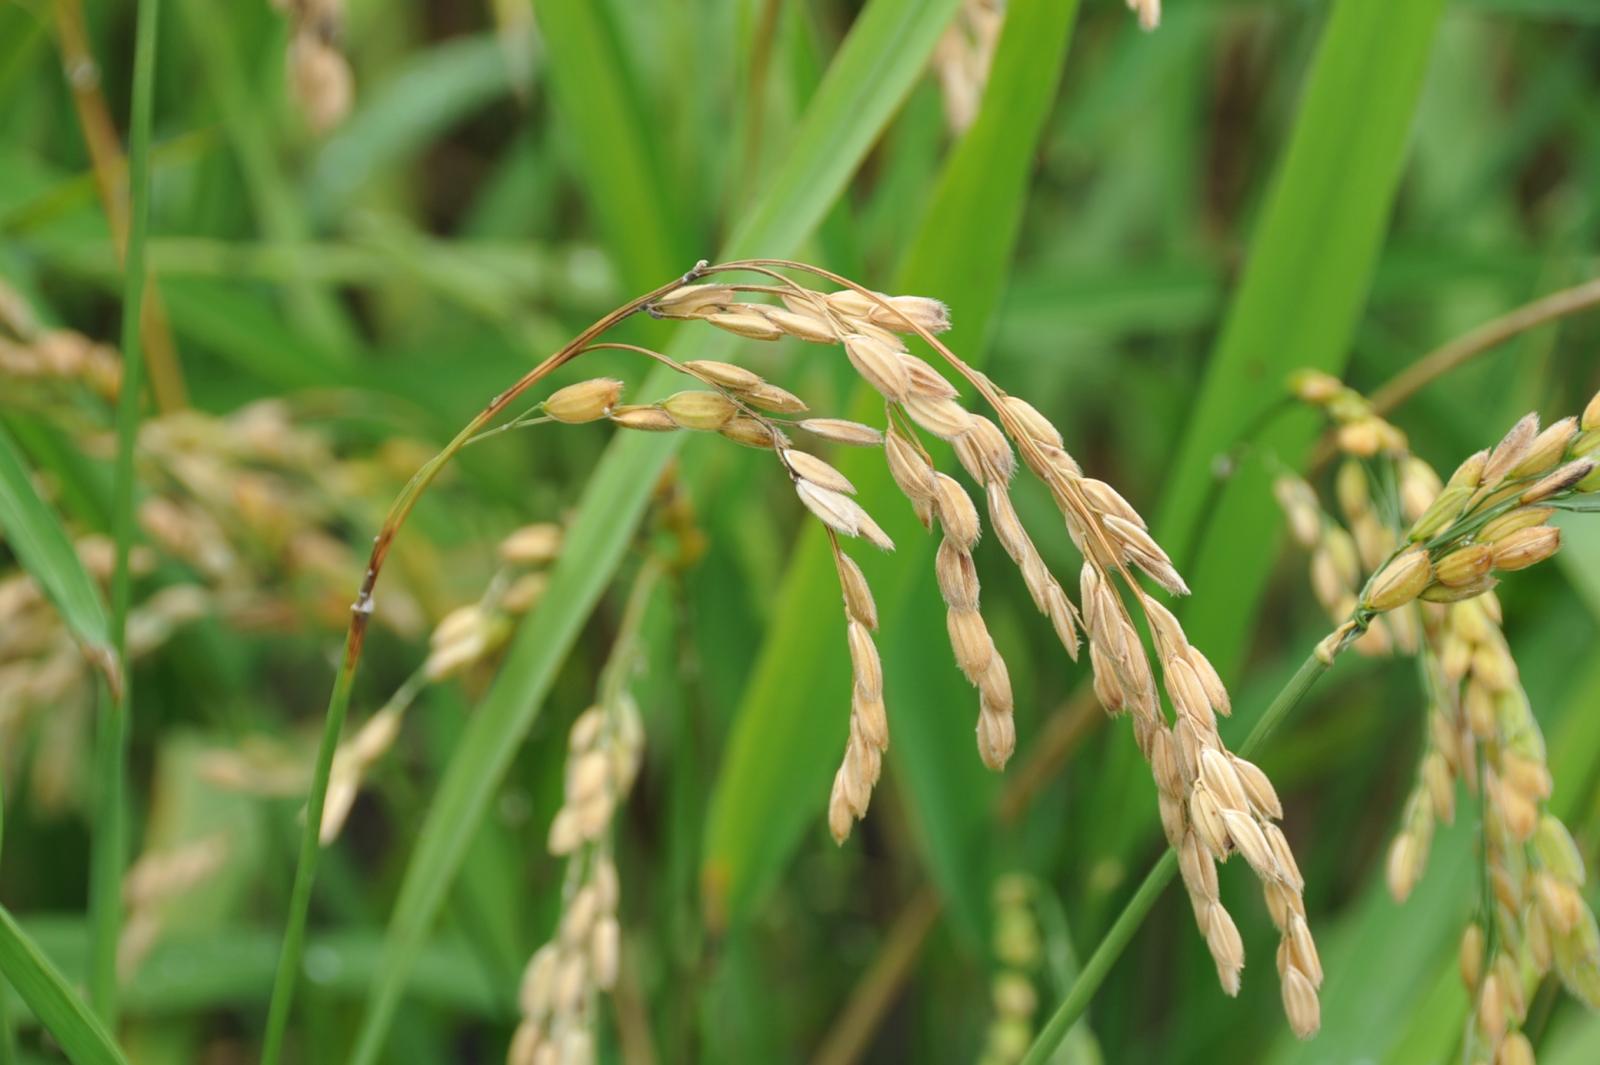 水稻受穗稻熱病危害狀，穗頸及枝梗部位有明顯褐色病斑